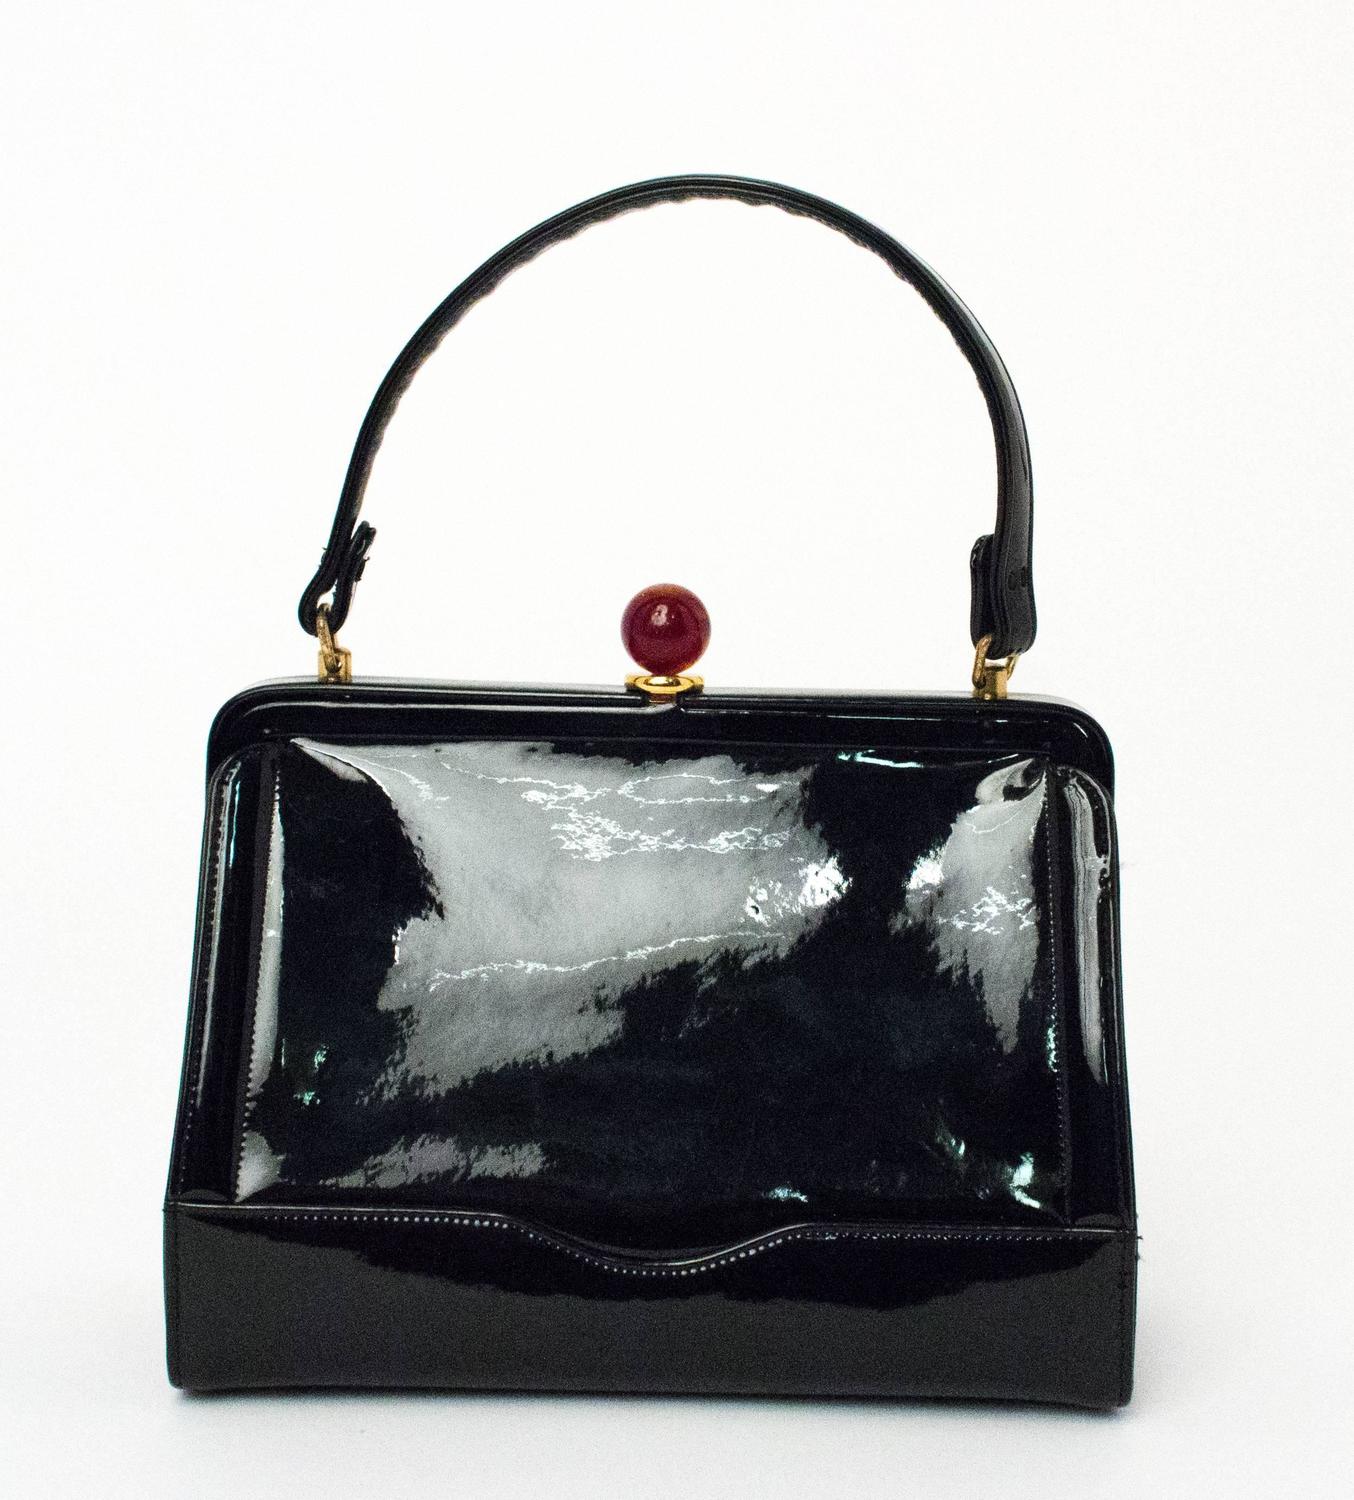 50s Coblentz Black Patent Leather Handbag For Sale at 1stdibs